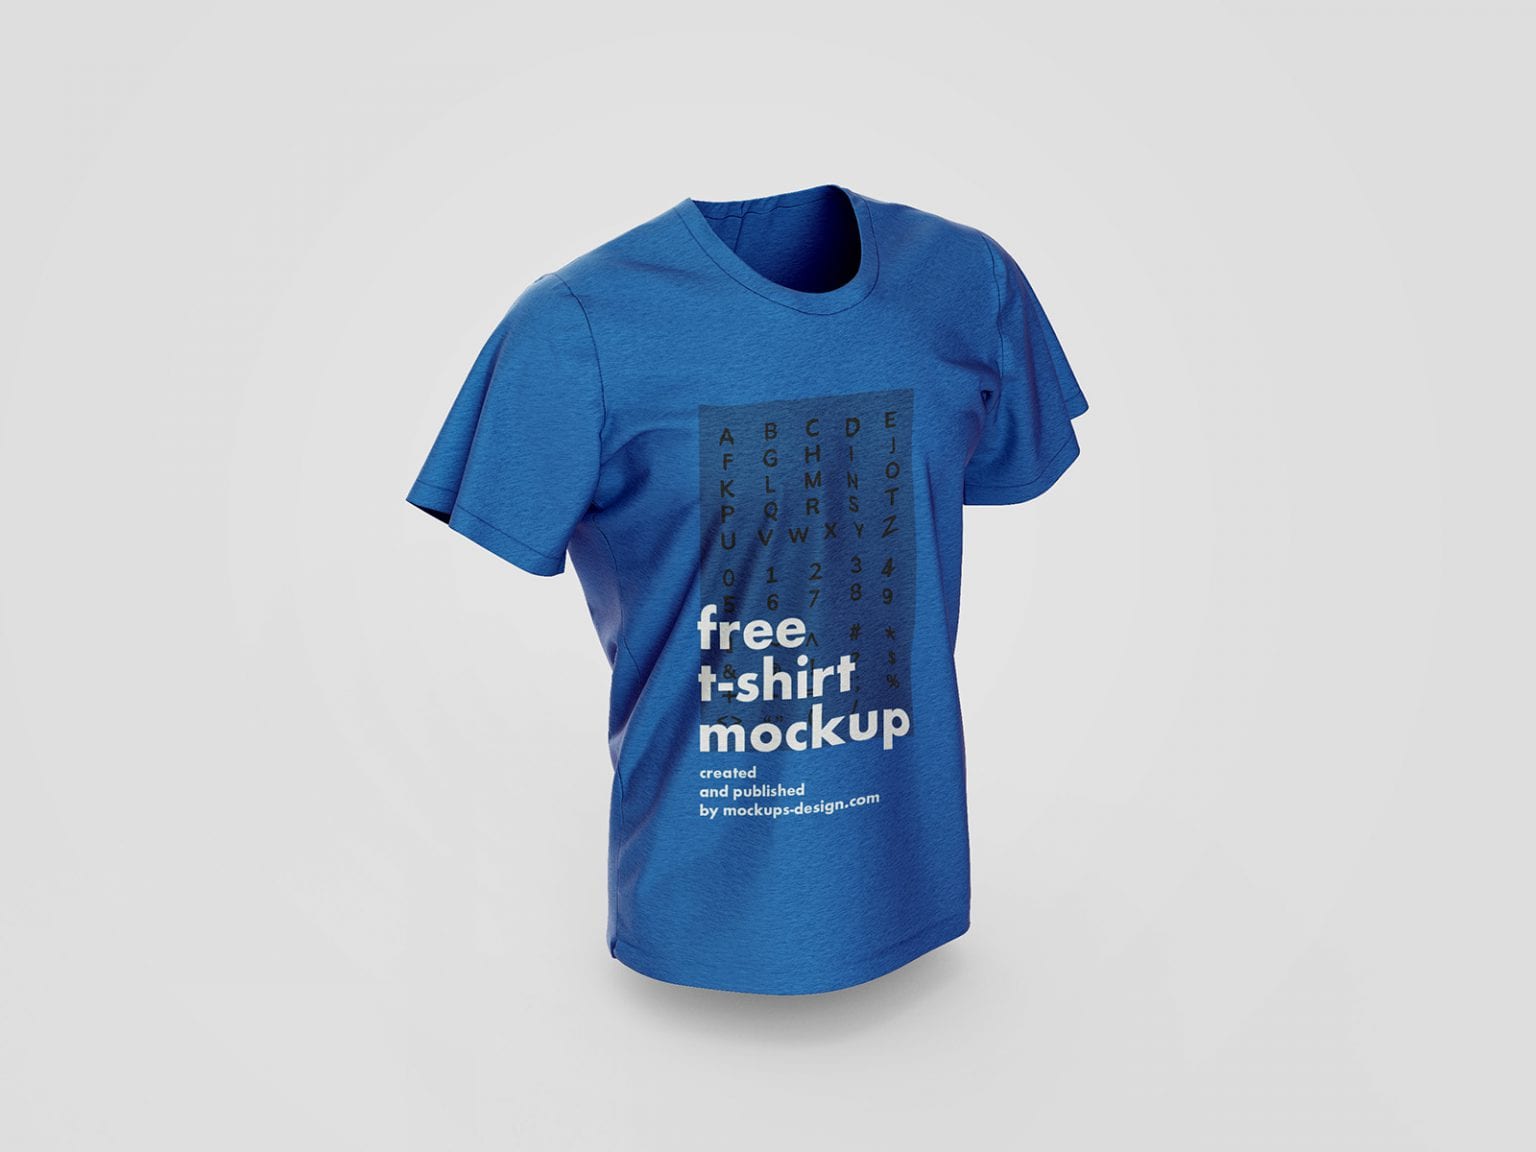 Half Sleeves T-Shirt Mockup Free Download